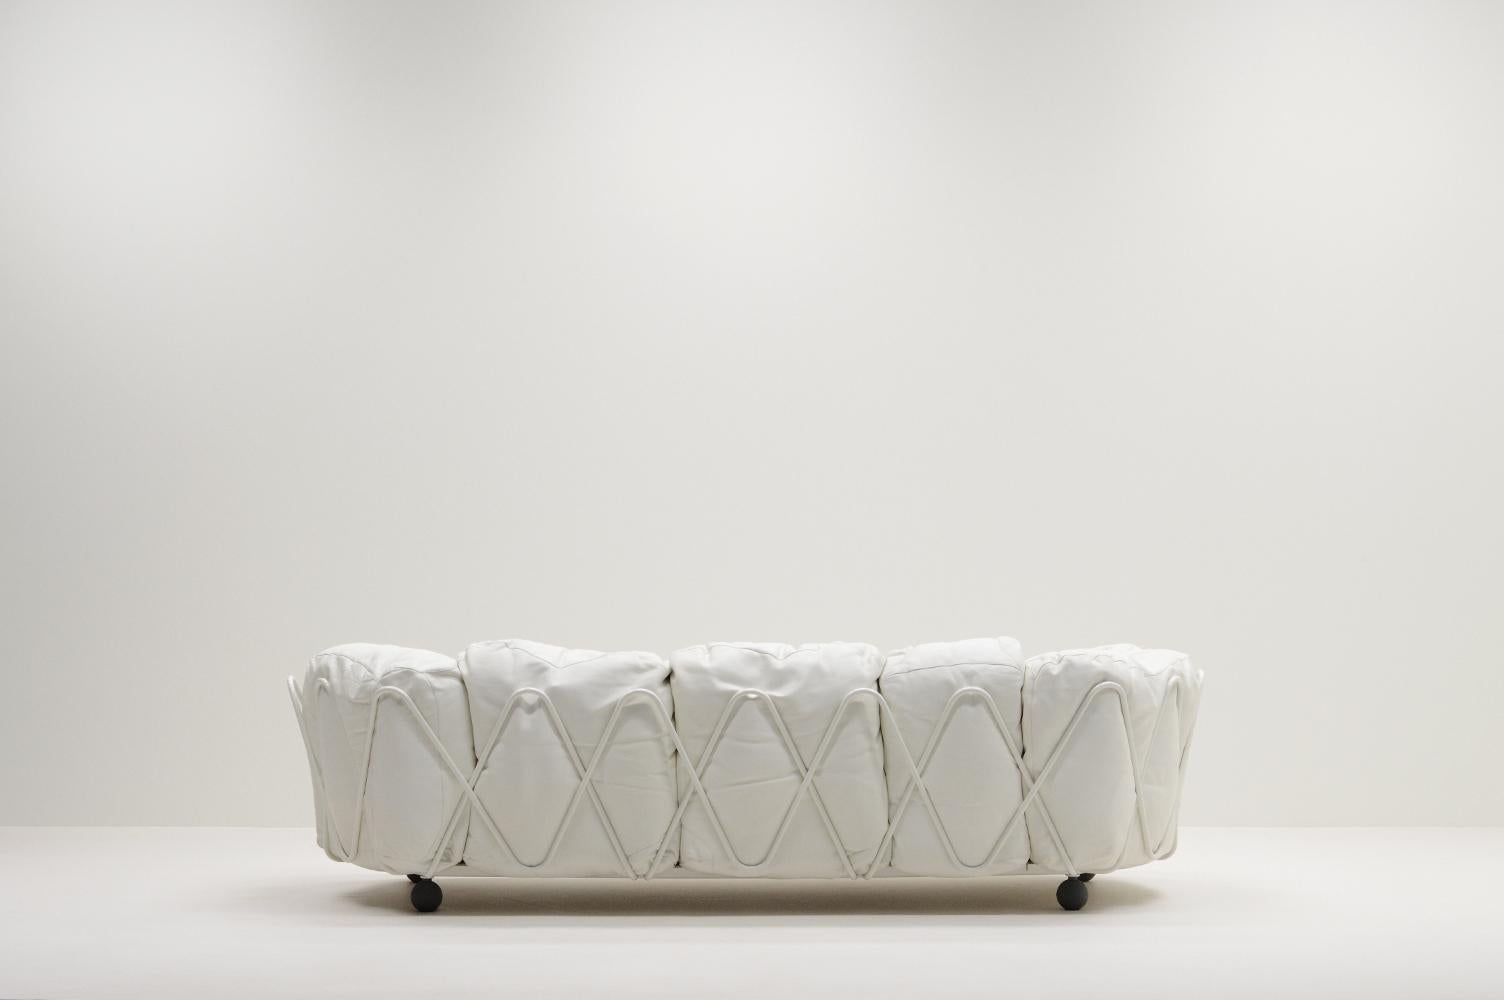 Italian Rare Corbeille lounge sofa by Francesco Binfaré for Edra, Italy. For Sale